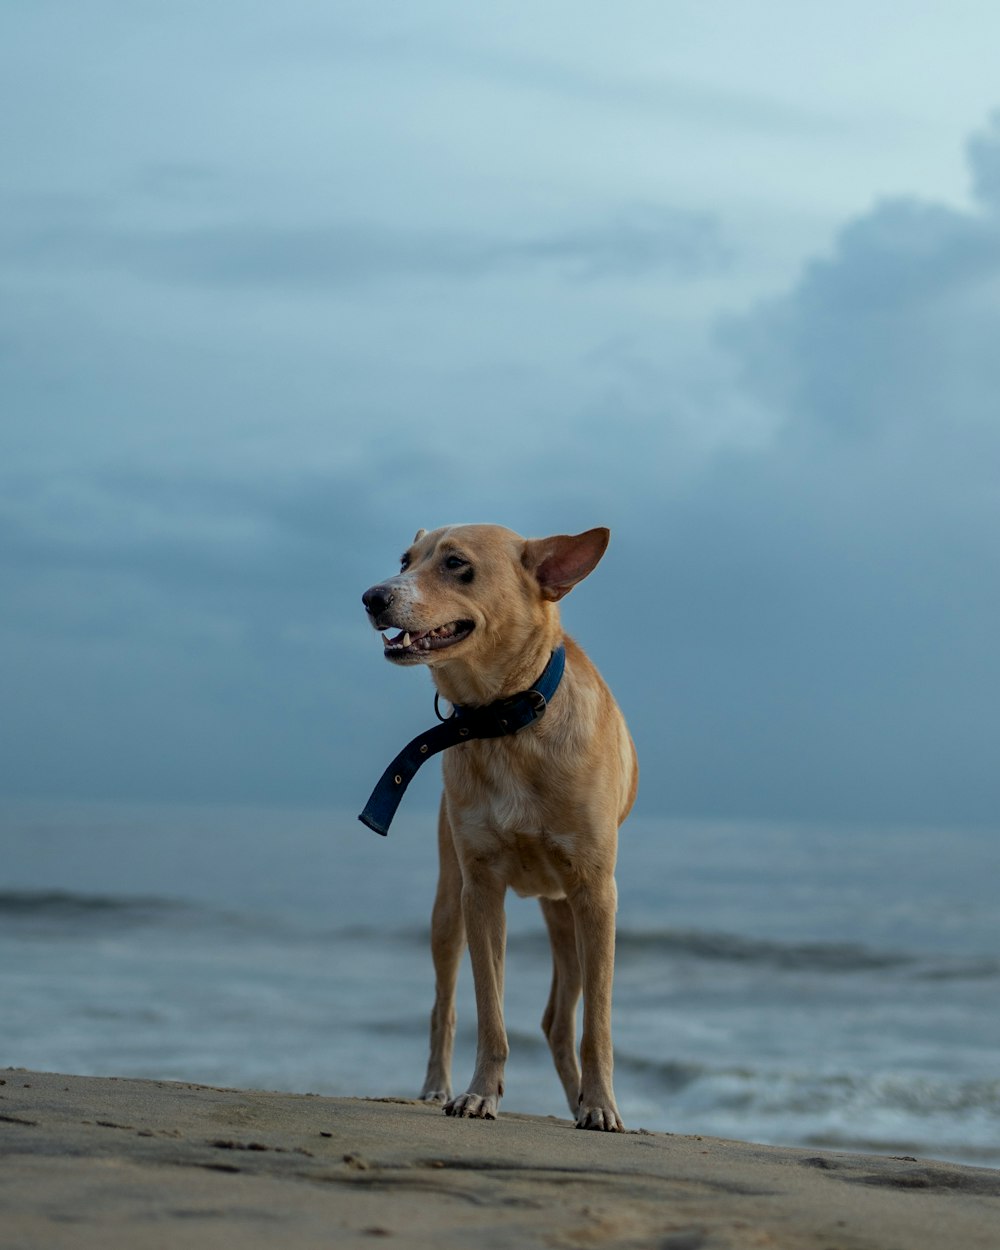 a dog with a leash on a beach